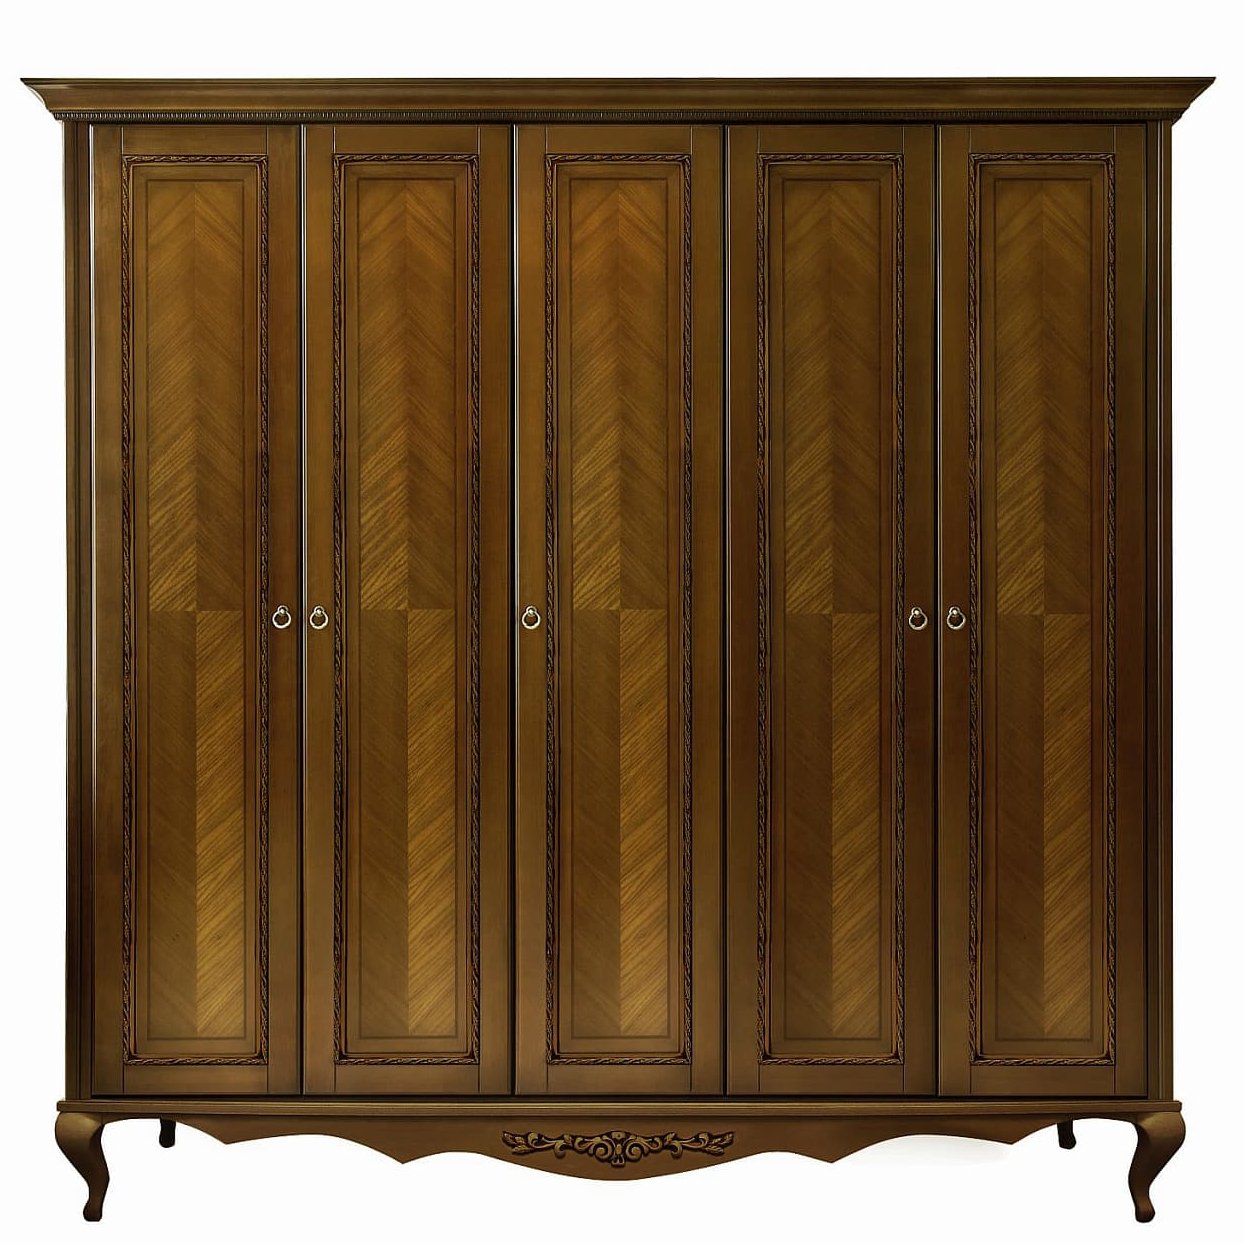 Шкаф платяной Timber Неаполь, 5-ти дверный 249x65x227 см цвет: орех (T-525Д)T-525Д